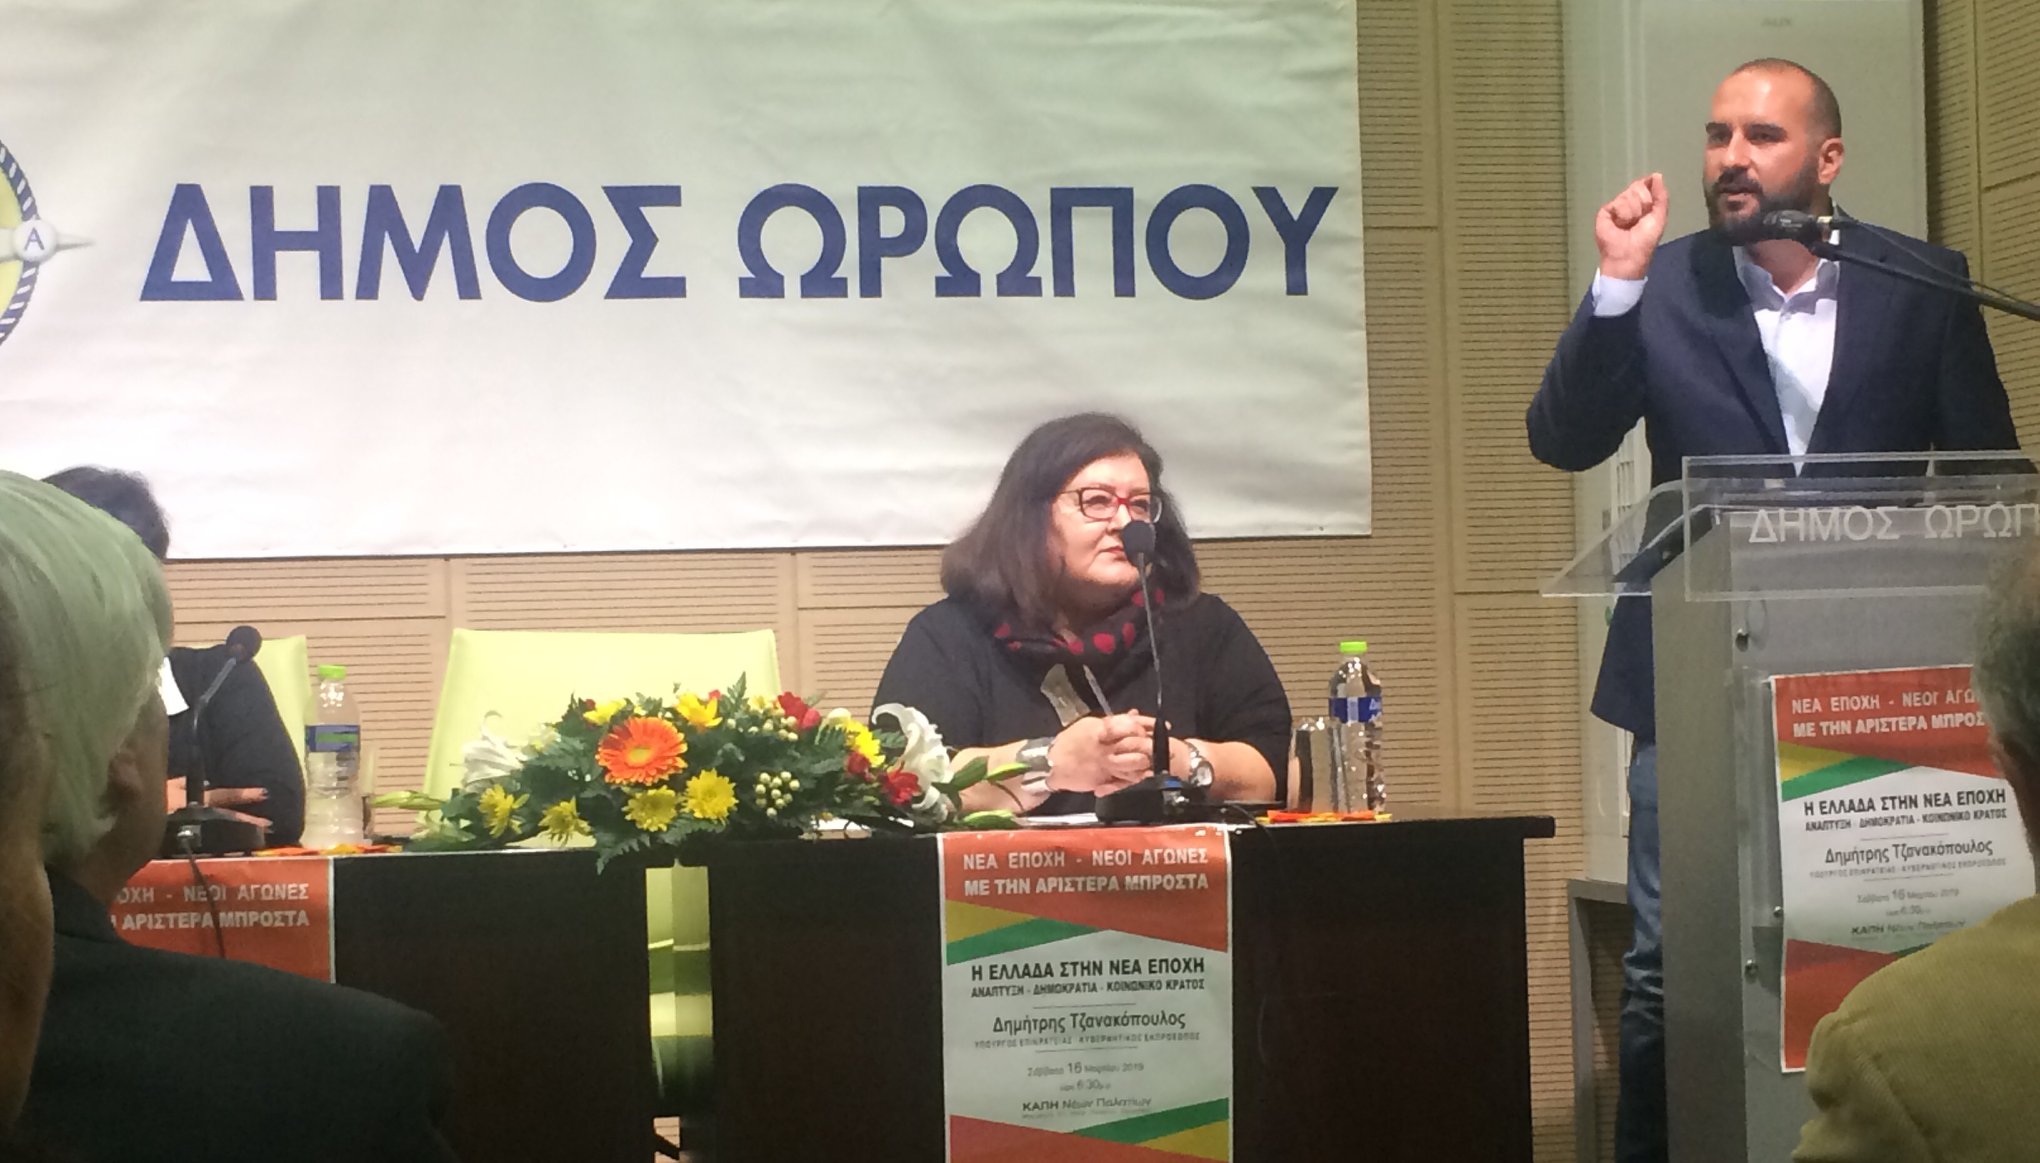 Από την ανοιχτή πολιτική εκδήλωση του ΣΥΡΙΖΑ Ωρωπού με ομιλητή τον Δημήτρη Τζανακόπουλο